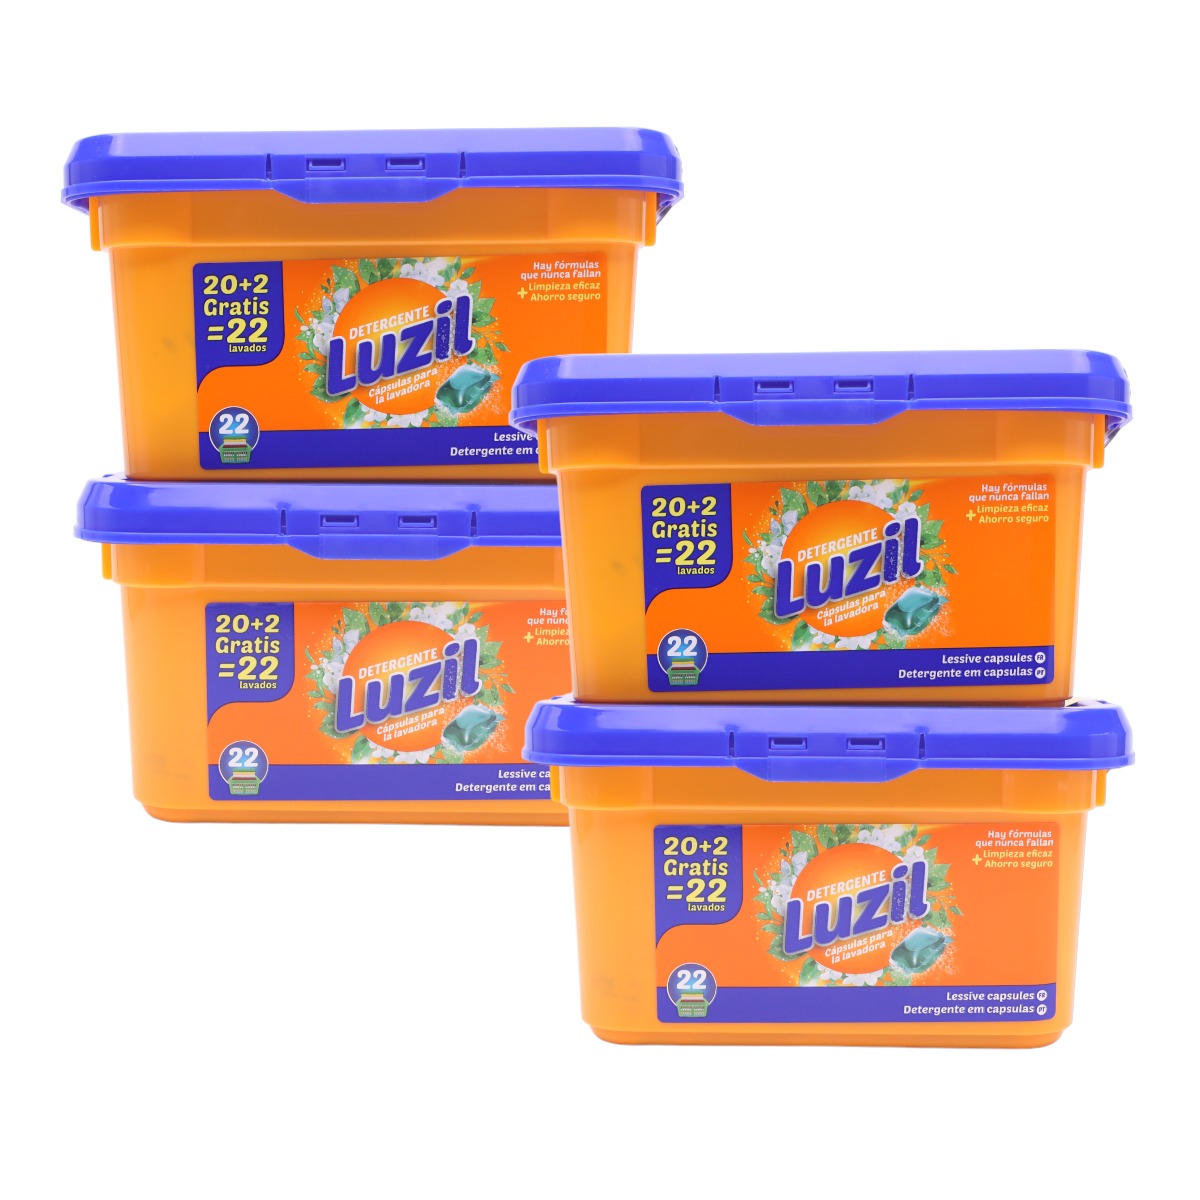 DISTRIBUX - Luzil Detergente Pack de 4 cajas de Detergente Lavadora en Cápsulas de 22 lavados cada caja (88 cápsulas en total)